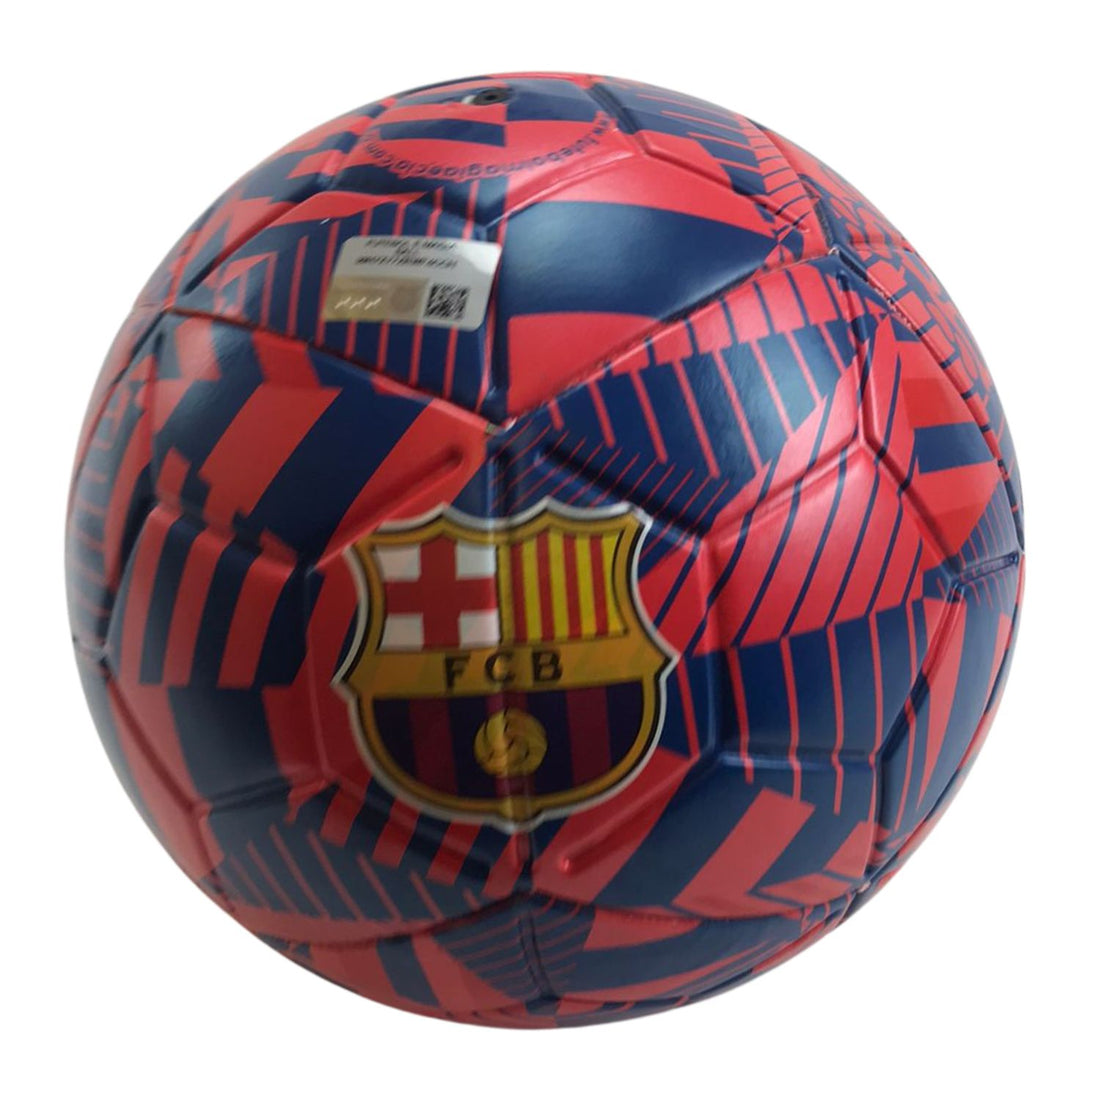 Mini Bola Futebol N2 Metalica do Barcelona - Futebol e Magia